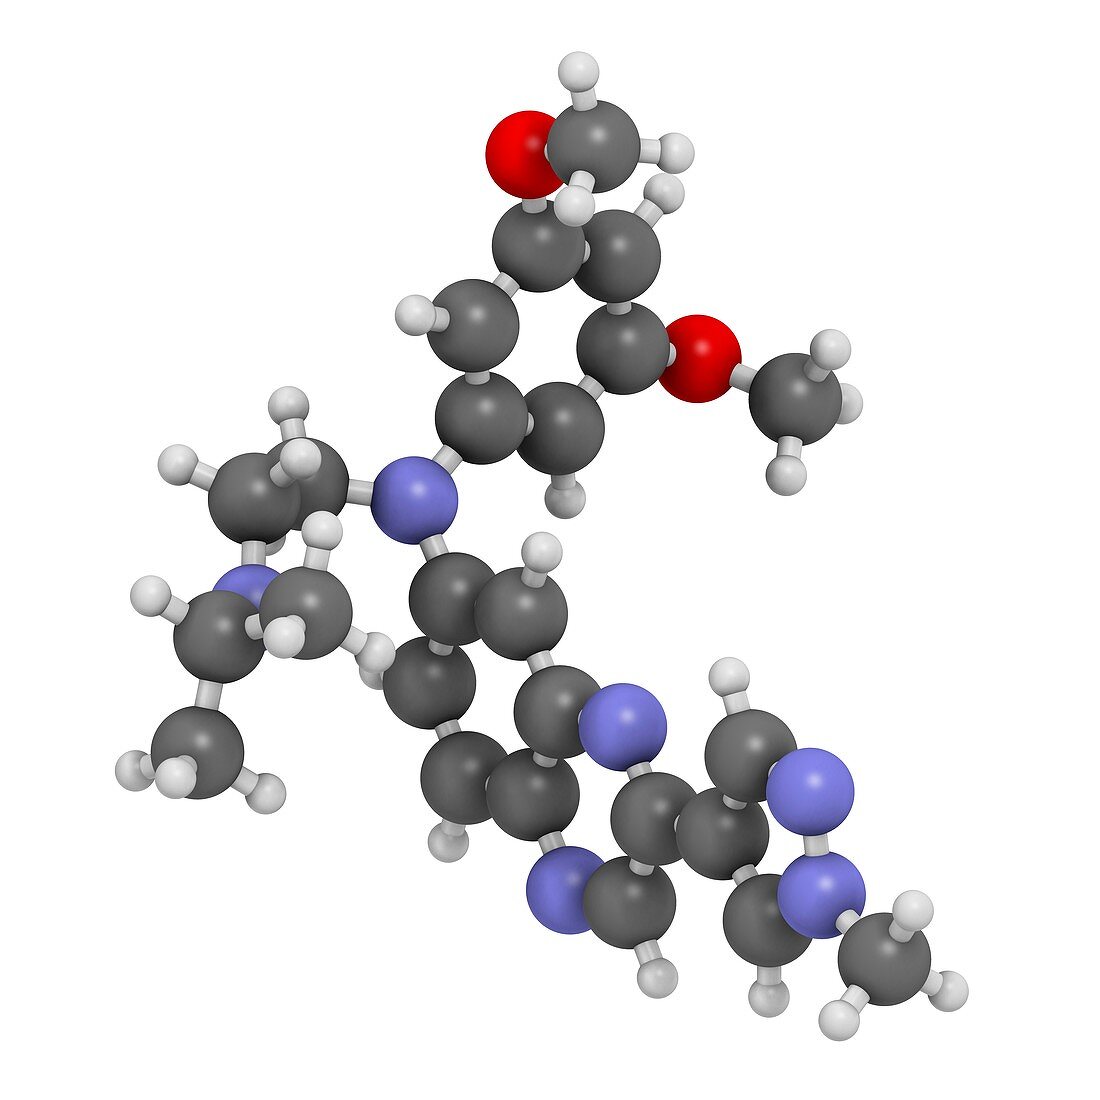 Erdafitinib cancer drug molecule